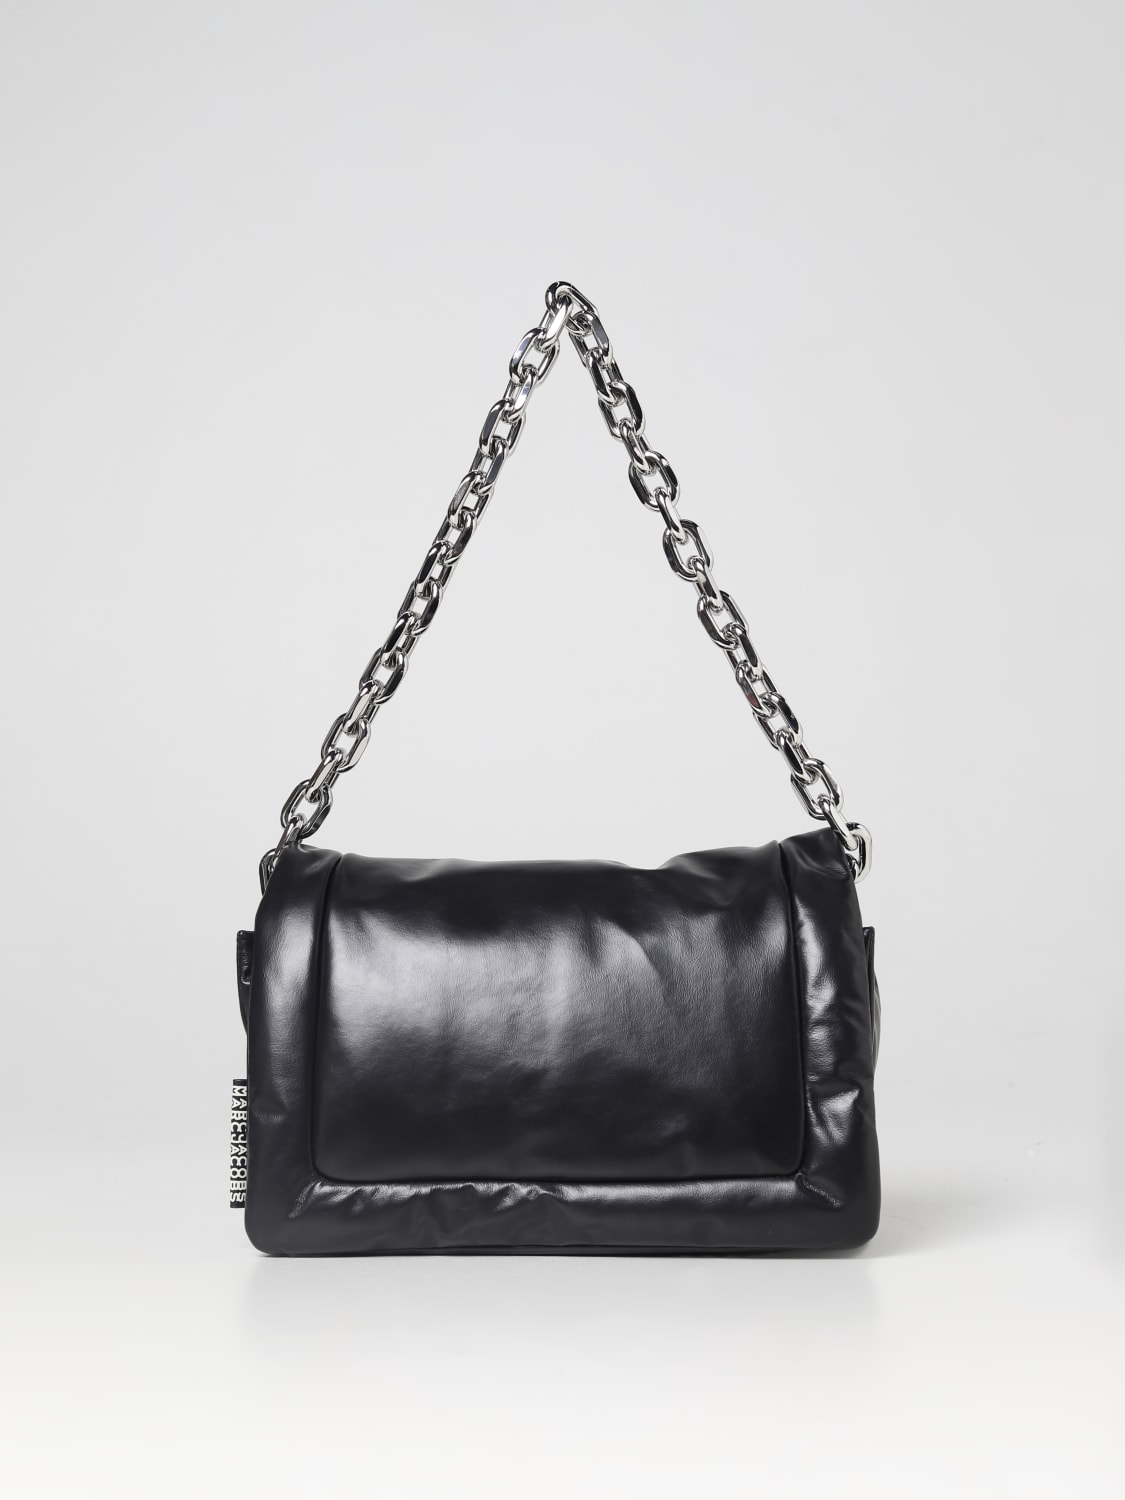 Marc Jacobs Woman's Shoulder Bag